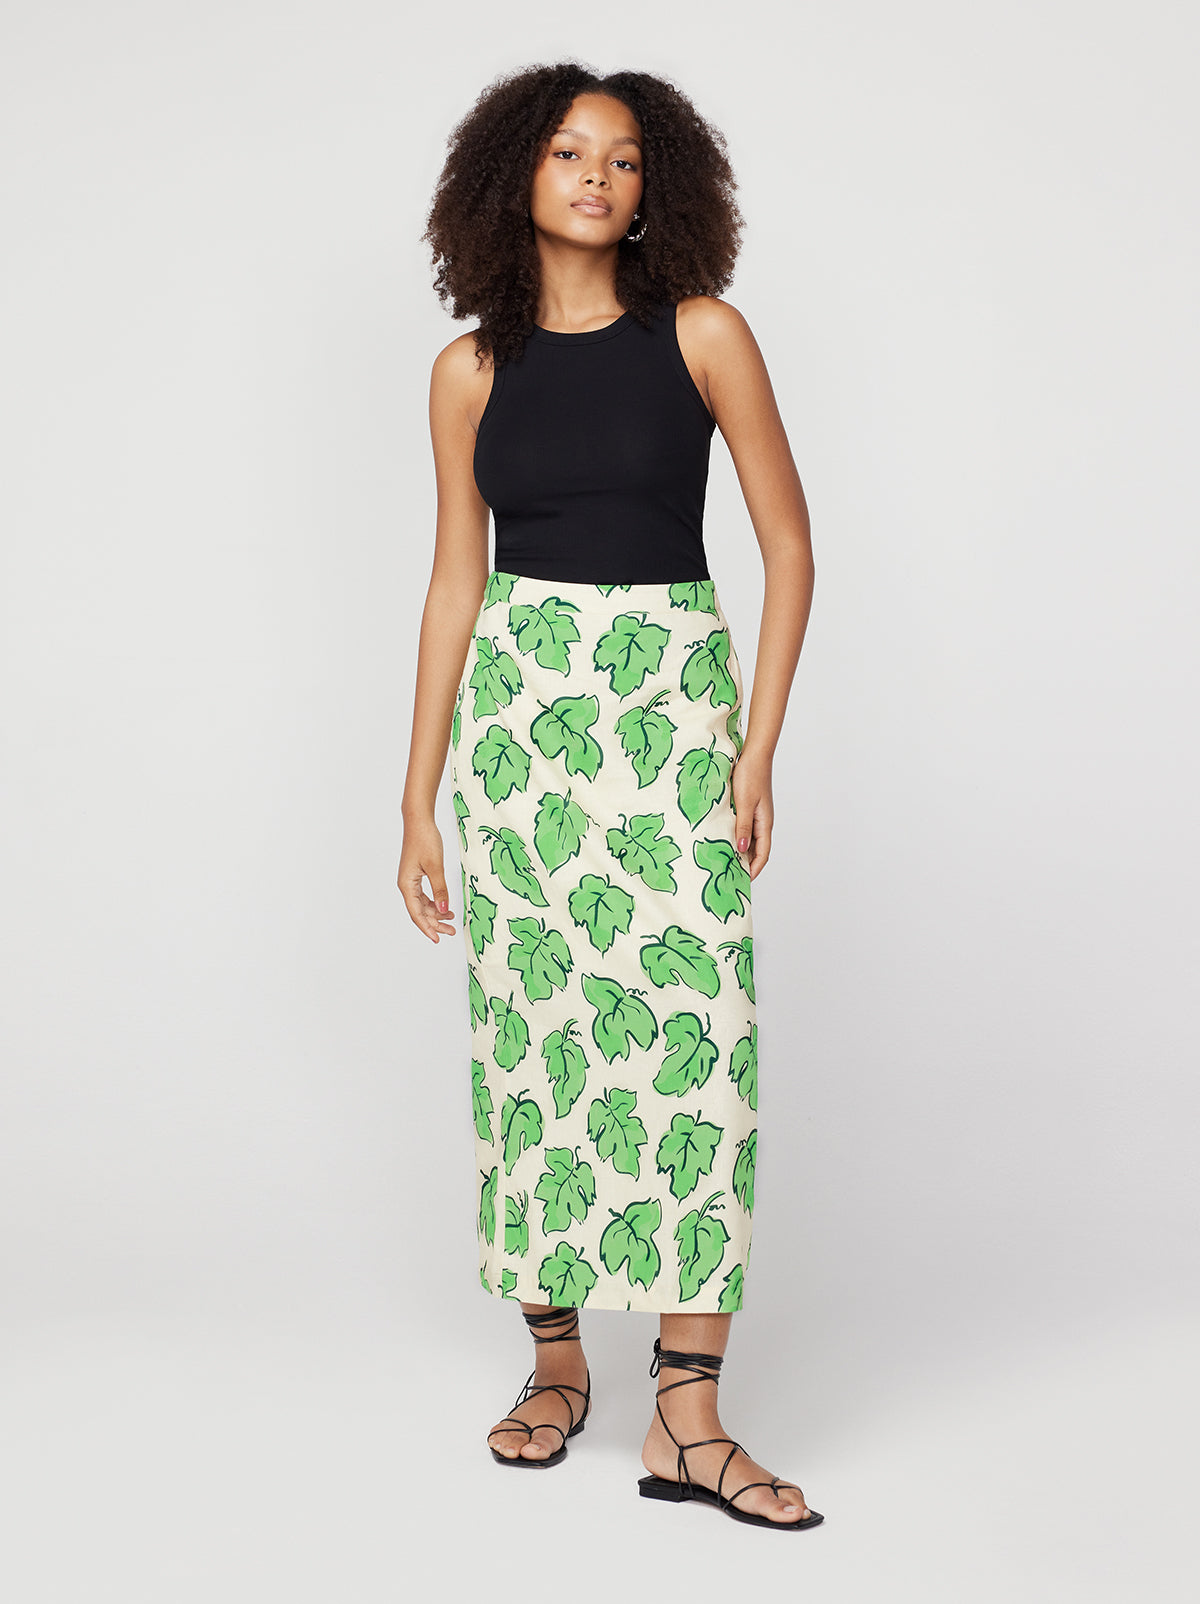 Laurel Green Vine Leaf Skirt By KITRI Studio